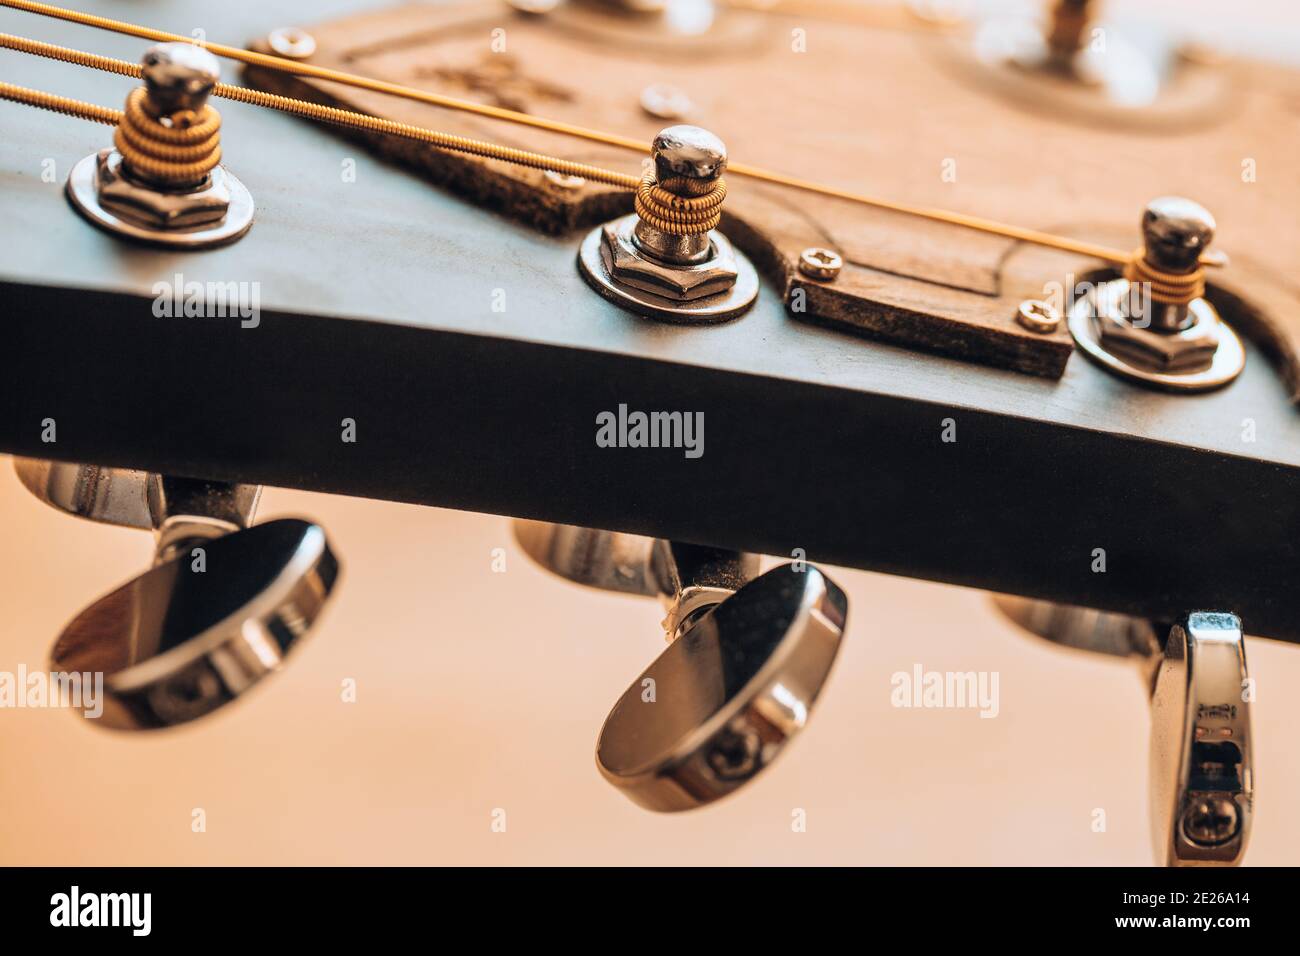 Fixation des cordes au fretboard - réglage de la guitare - gros plan de la machine de réglage Banque D'Images